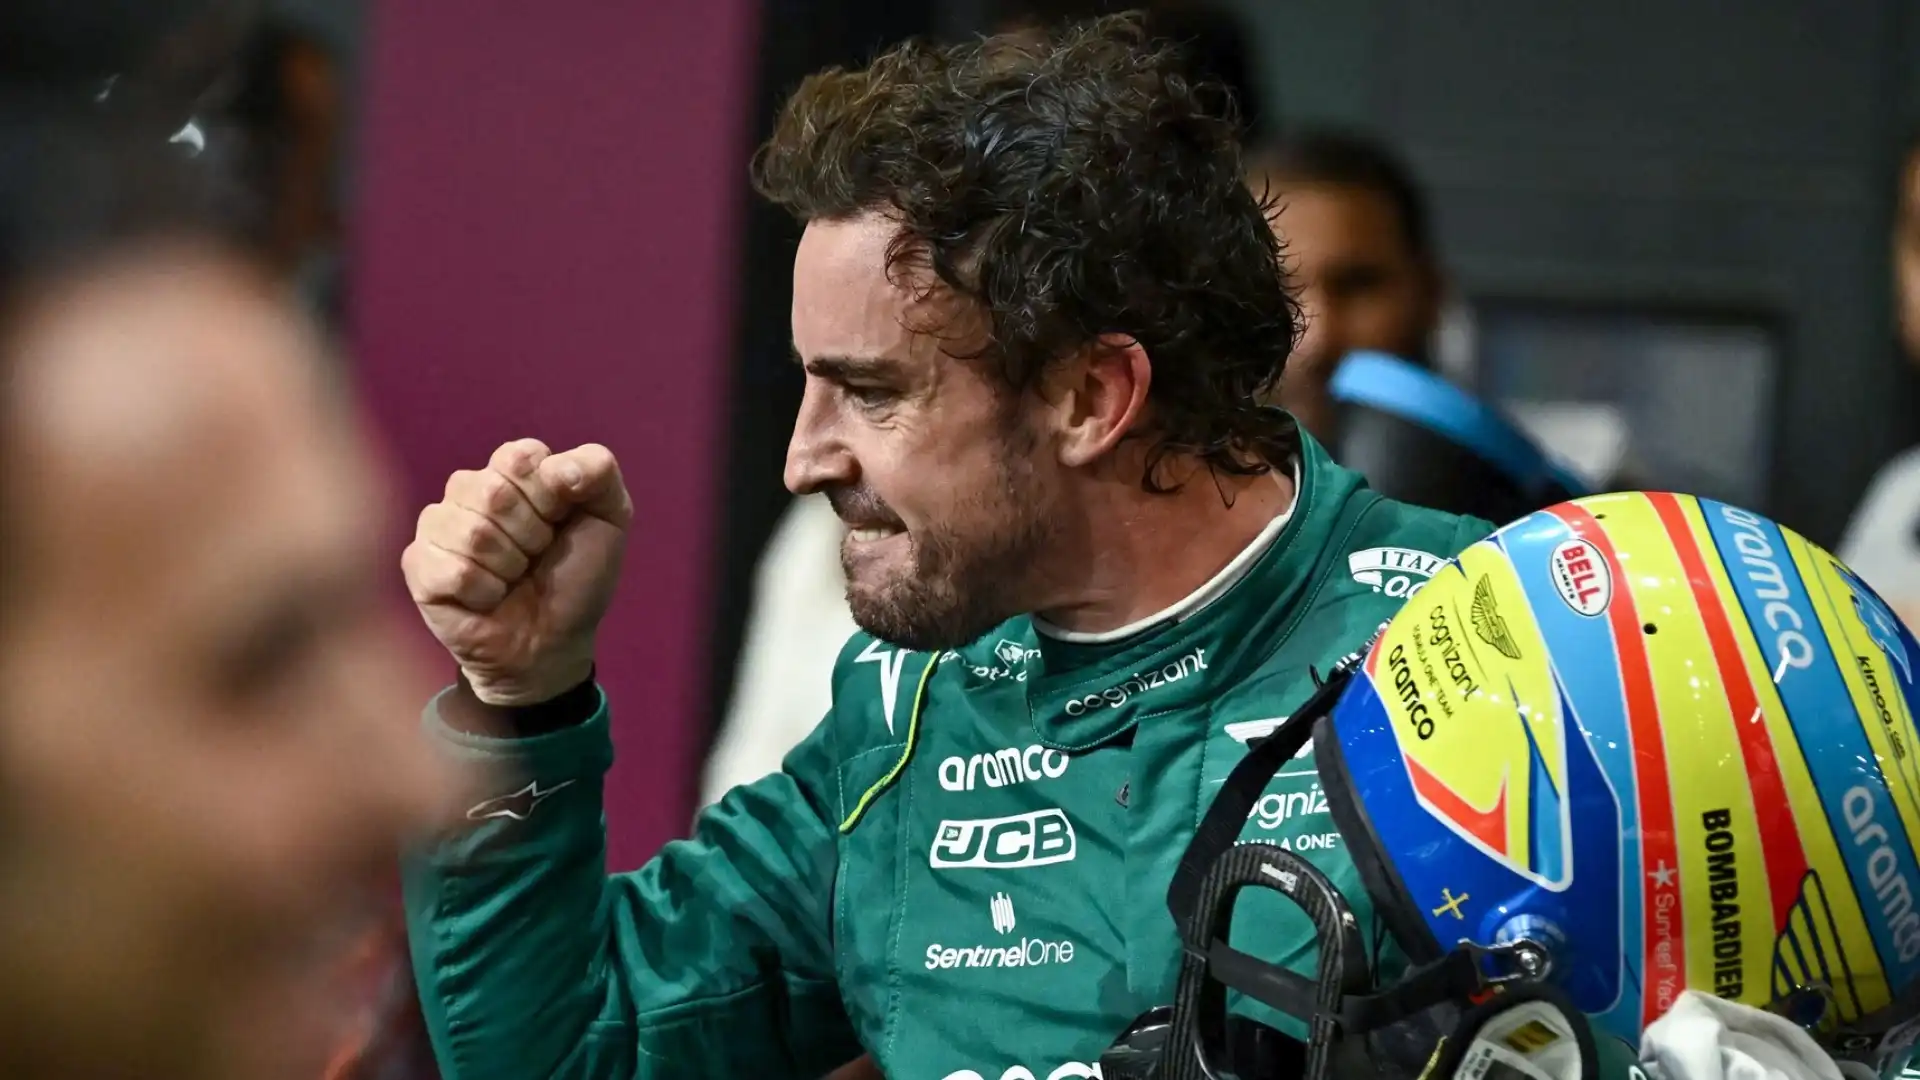 La Red Bull ha già escluso l'arrivo di Fernando Alonso: "Due piloti alpha nella stessa squadra non vanno bene", ha dichiarato Horner. Out anche Norris per lo stesso motivo